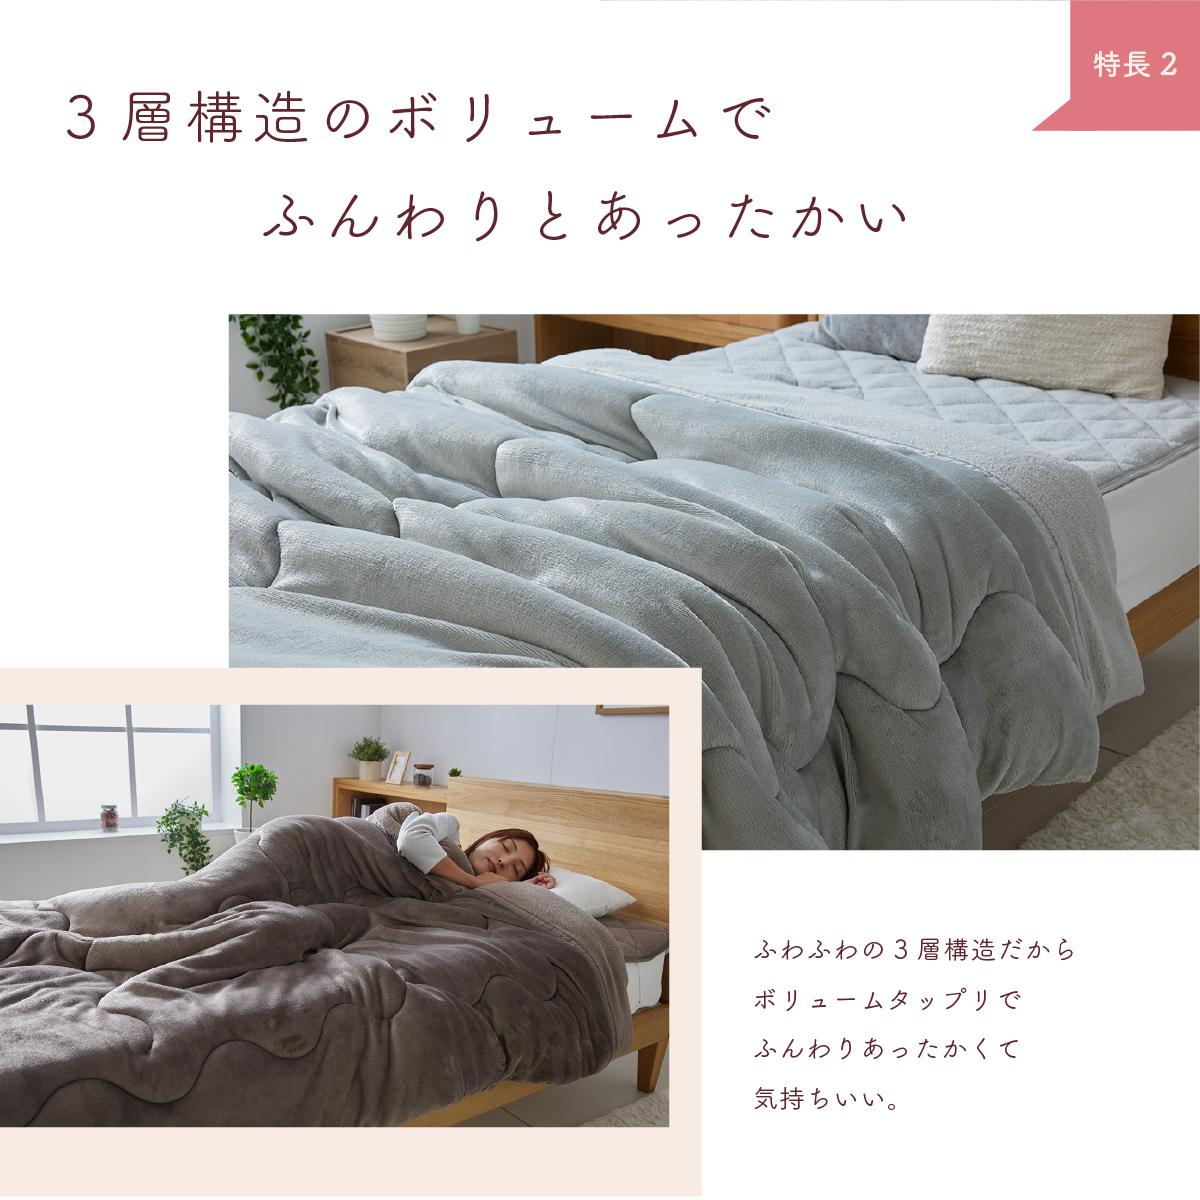 西川 アンゴラタッチ マイヤー二枚合わせ毛布 ダブルWサイズ - 布団・毛布